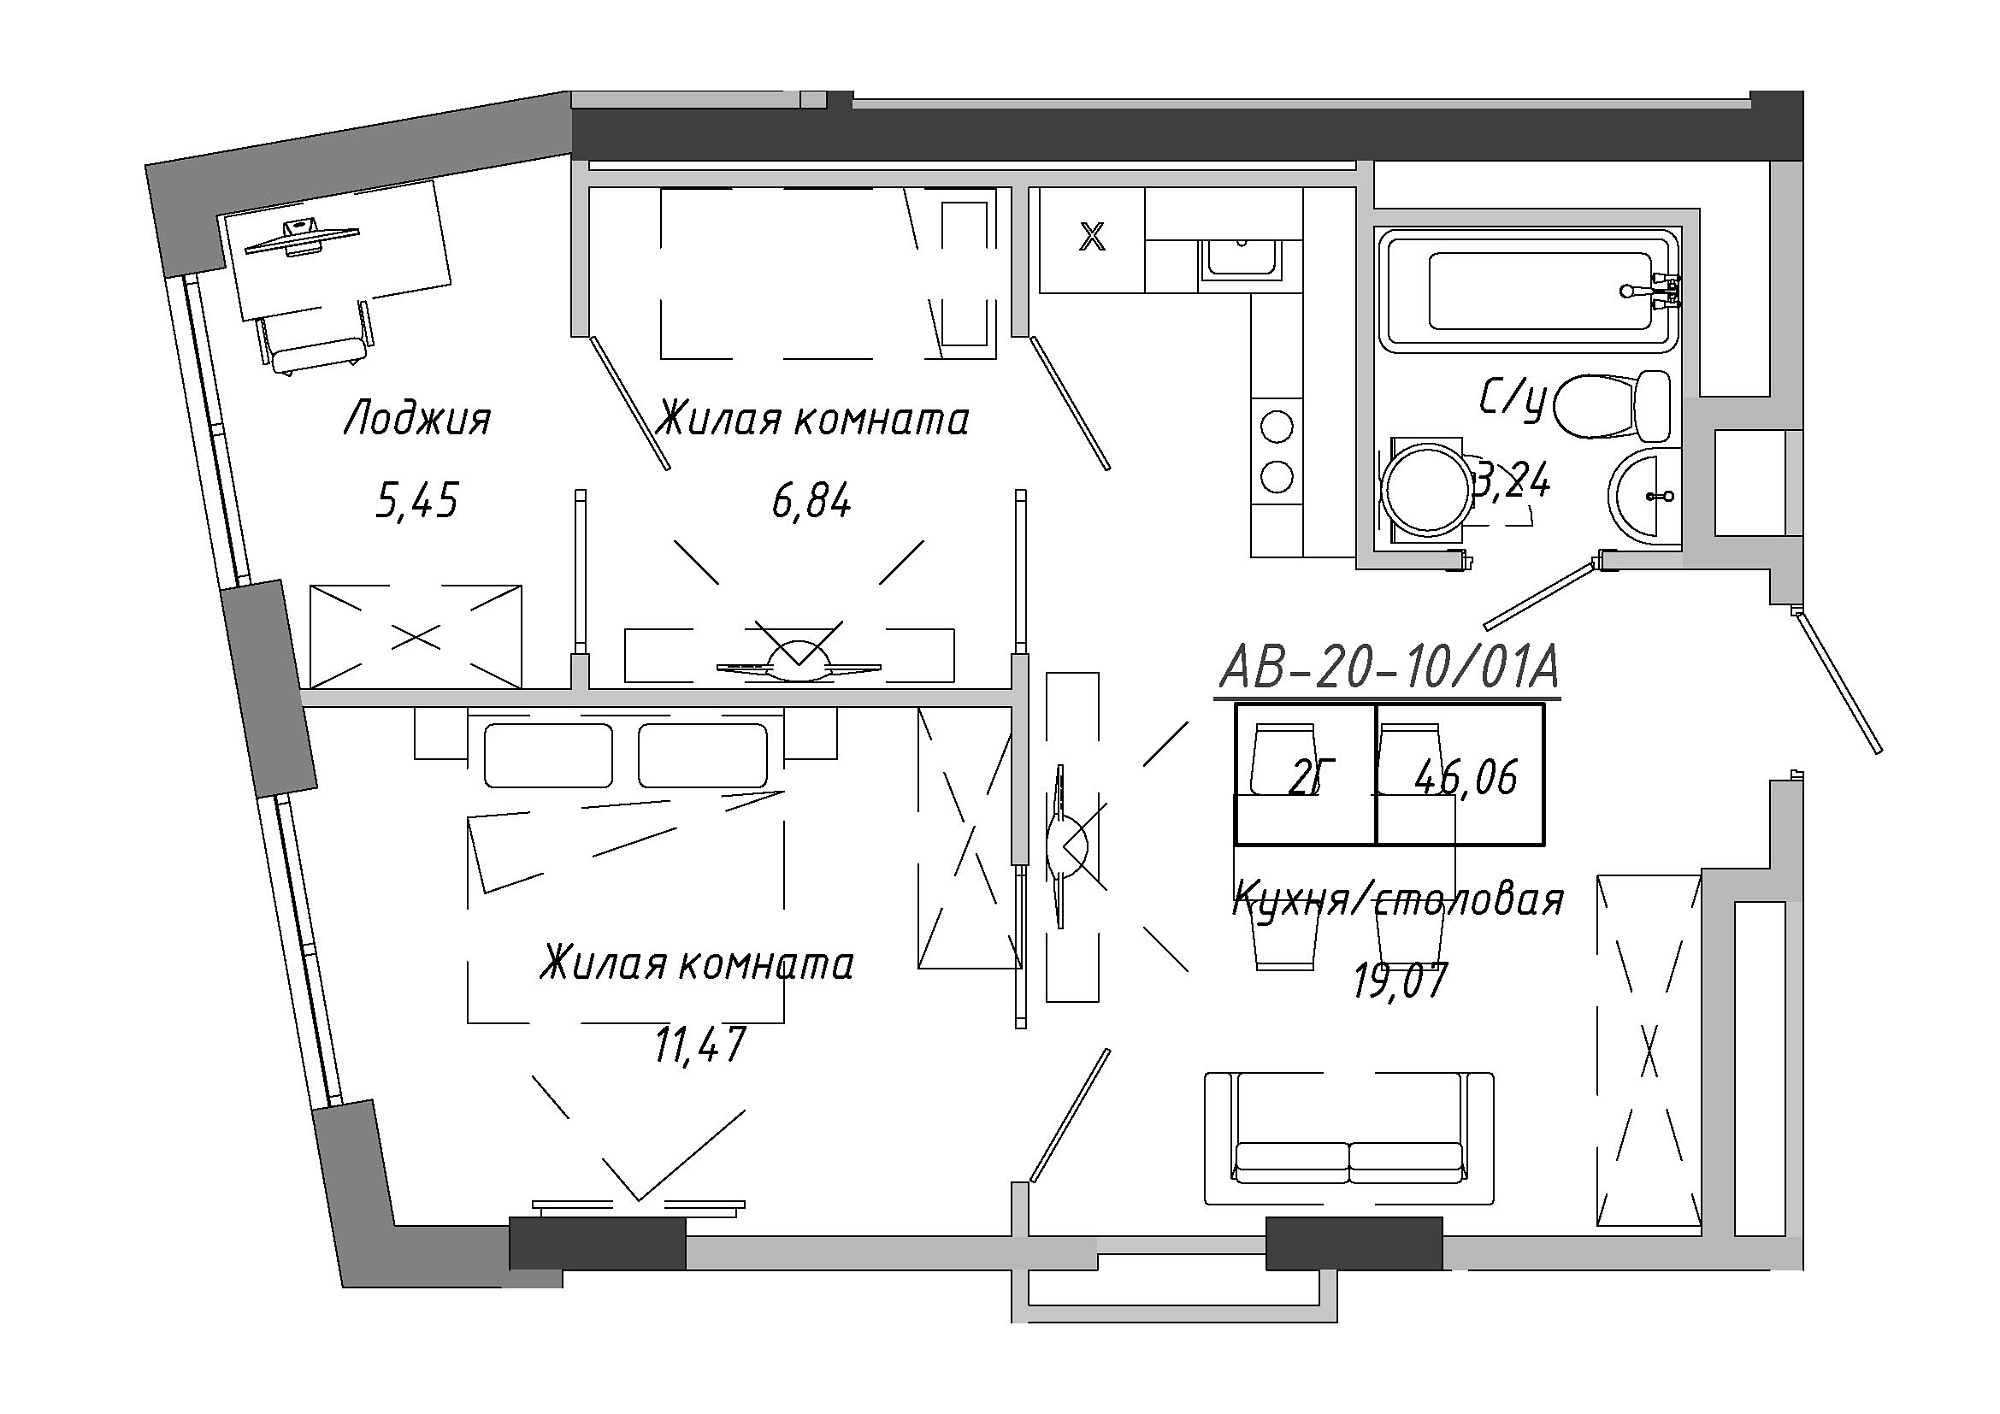 Планировка 2-к квартира площей 45.99м2, AB-20-10/0001а.